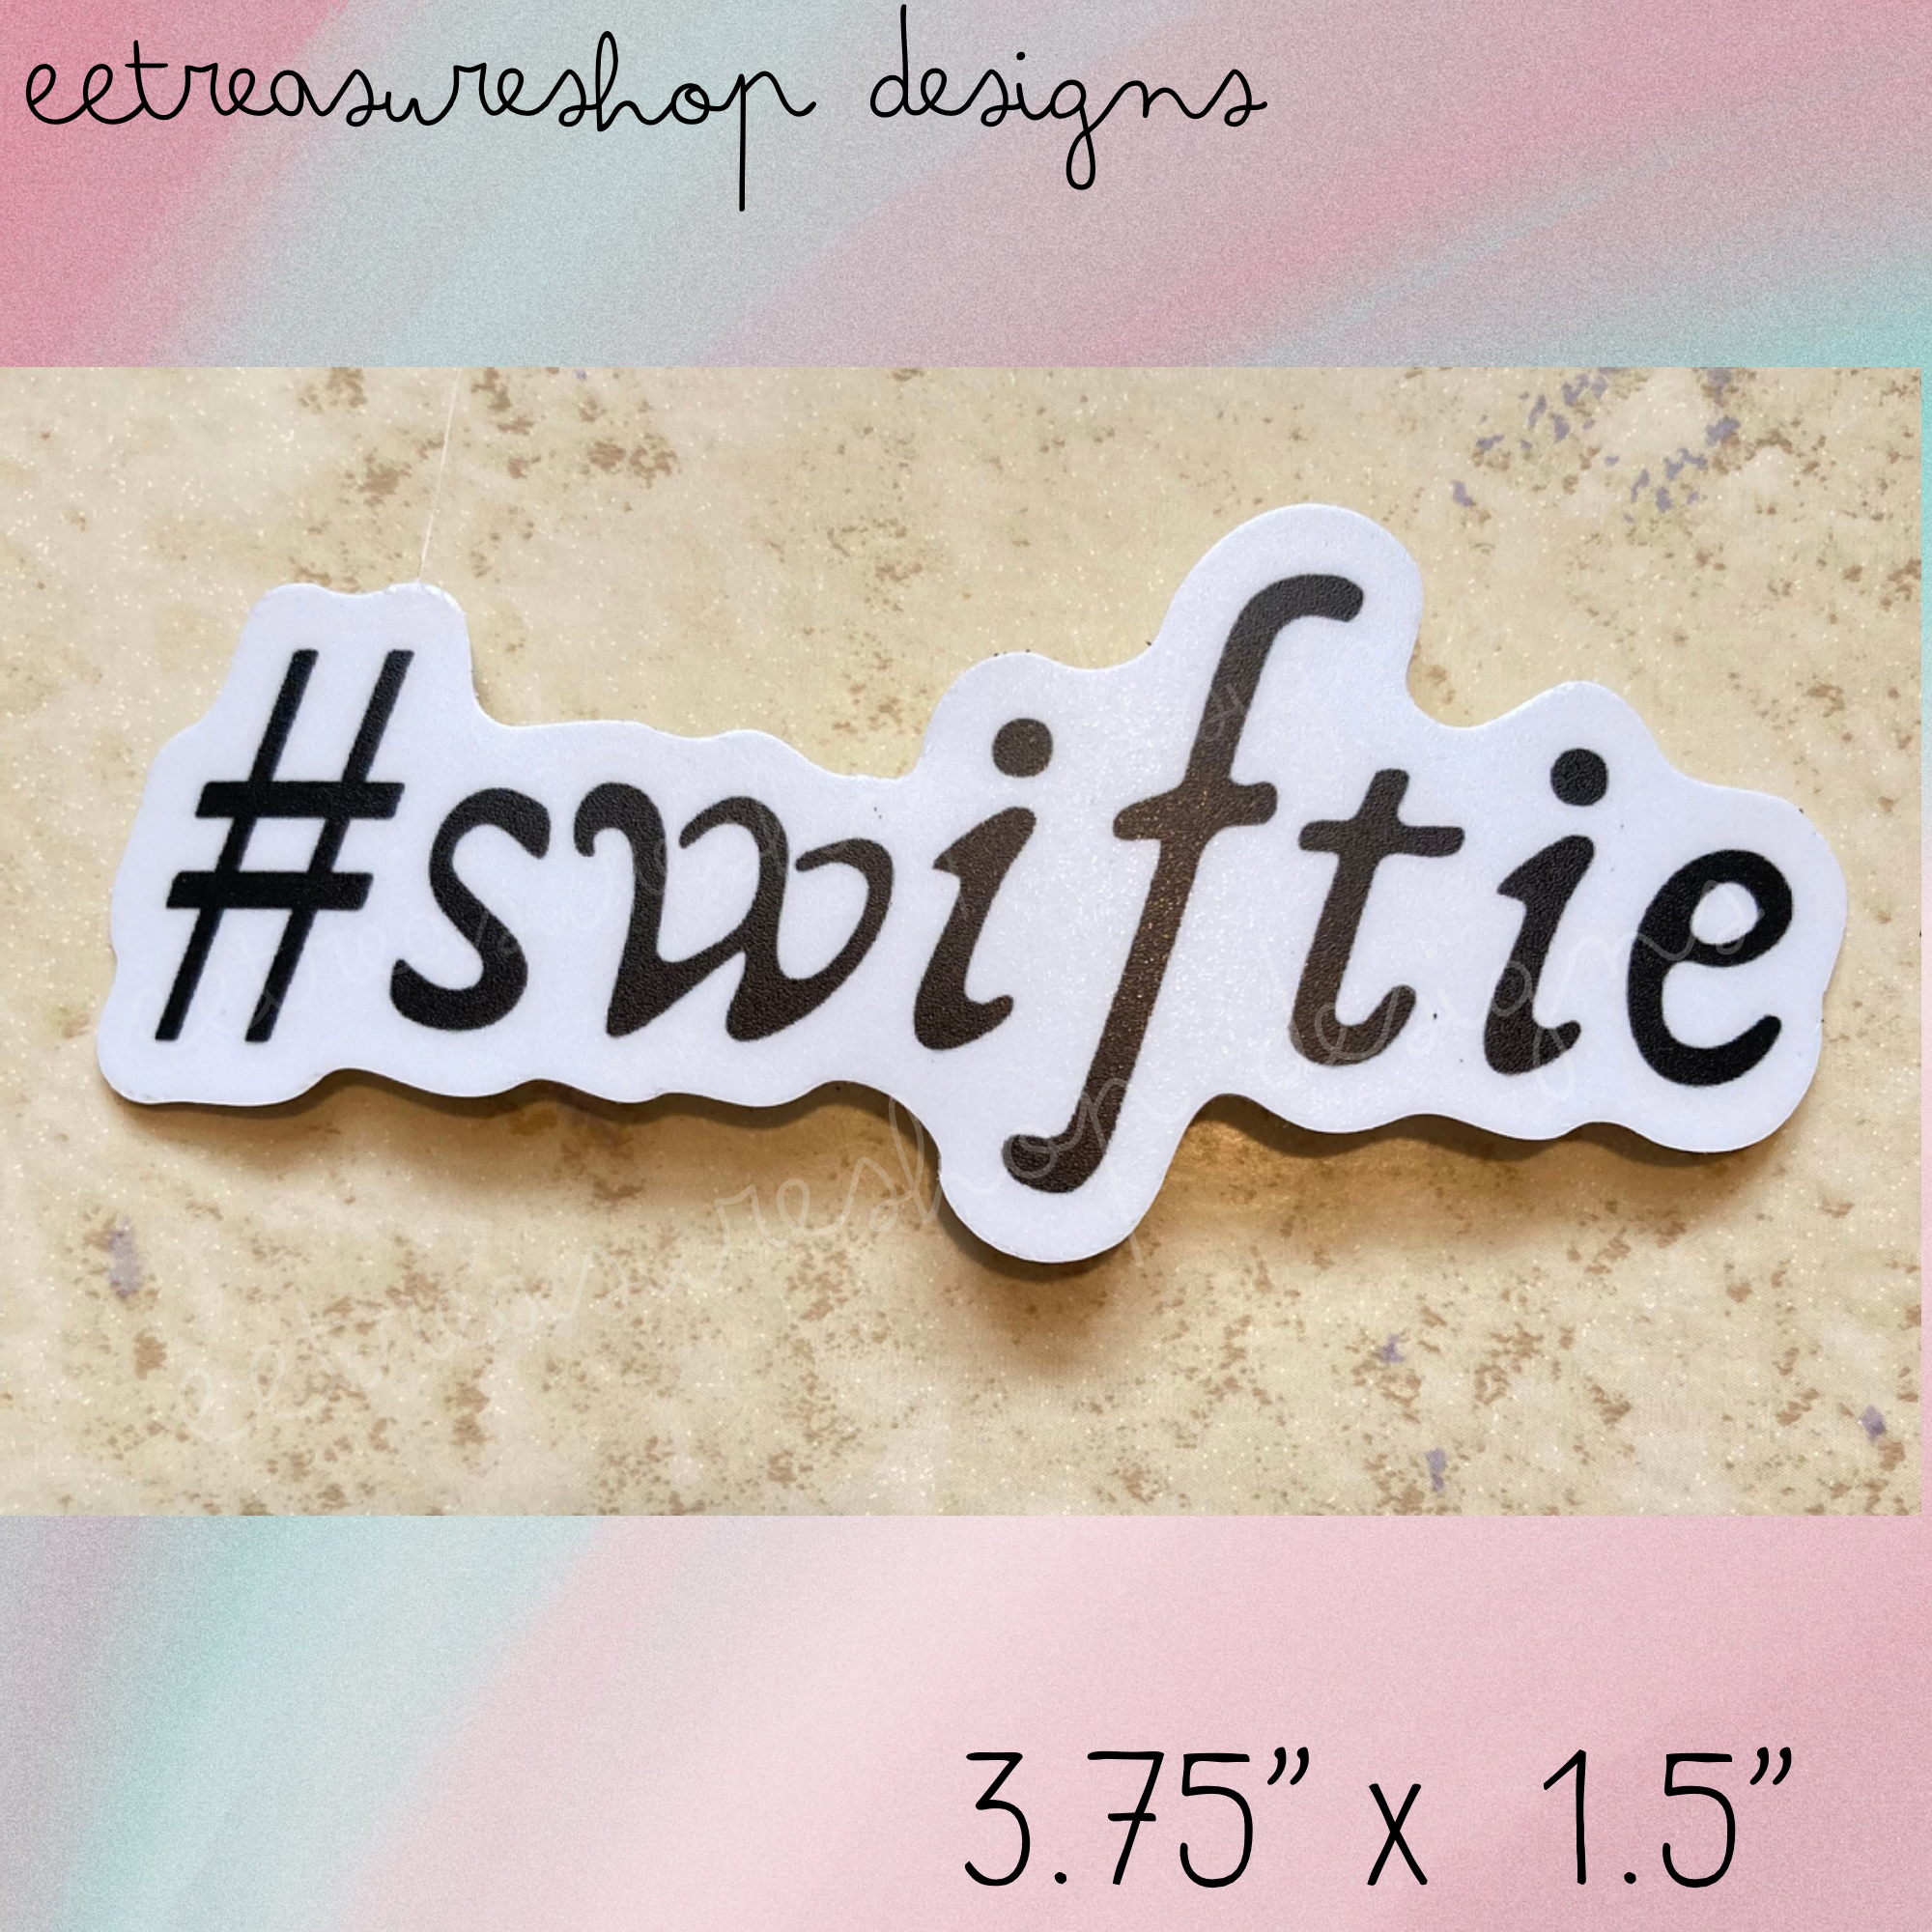 Swiftie Taylor Swift Inspired Waterproof Vinyl Sticker – E.E.